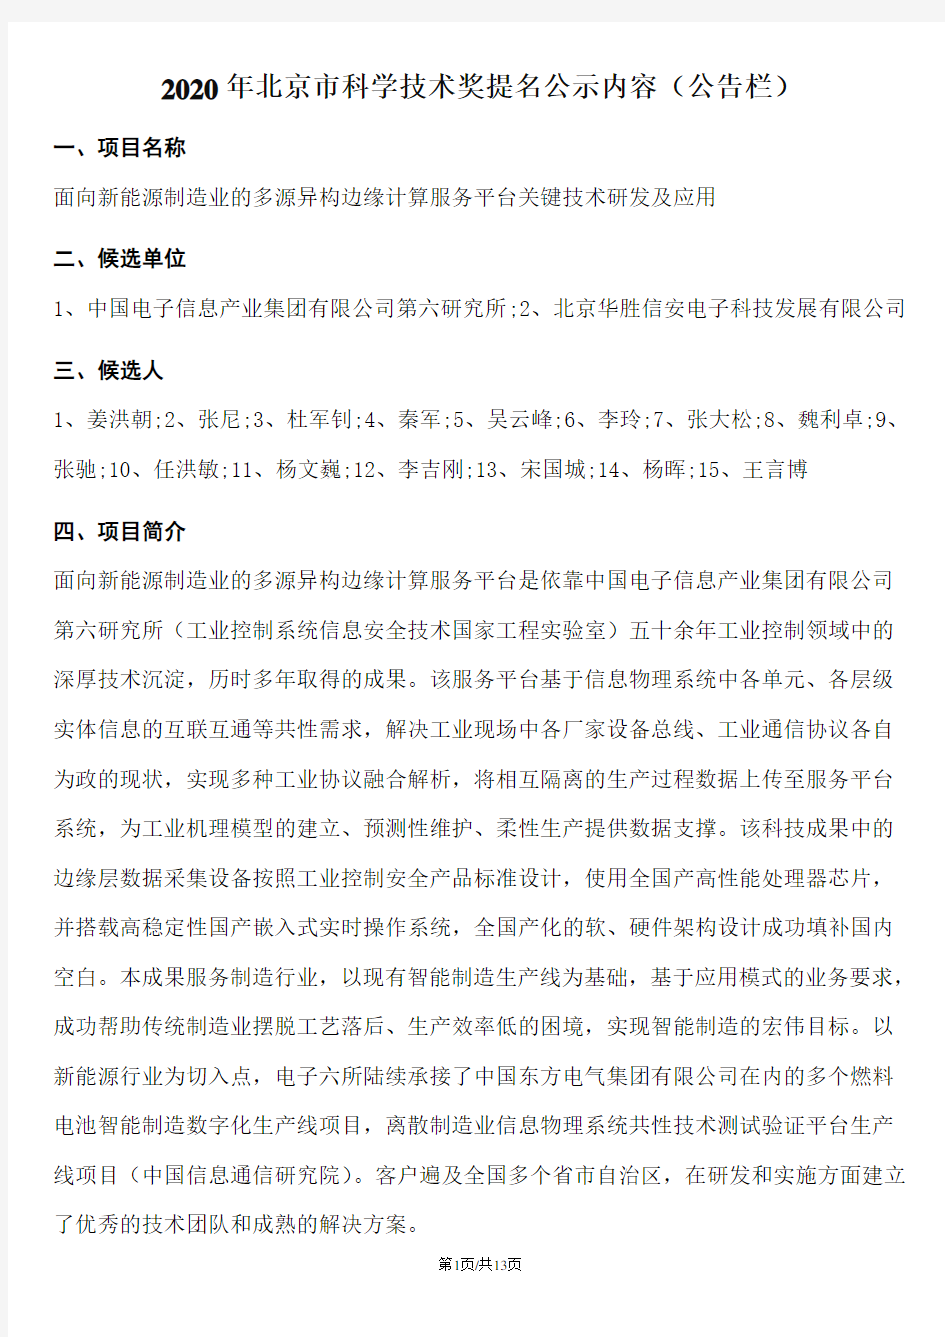 2020年北京市科学技术奖提名公示内容(公告栏)